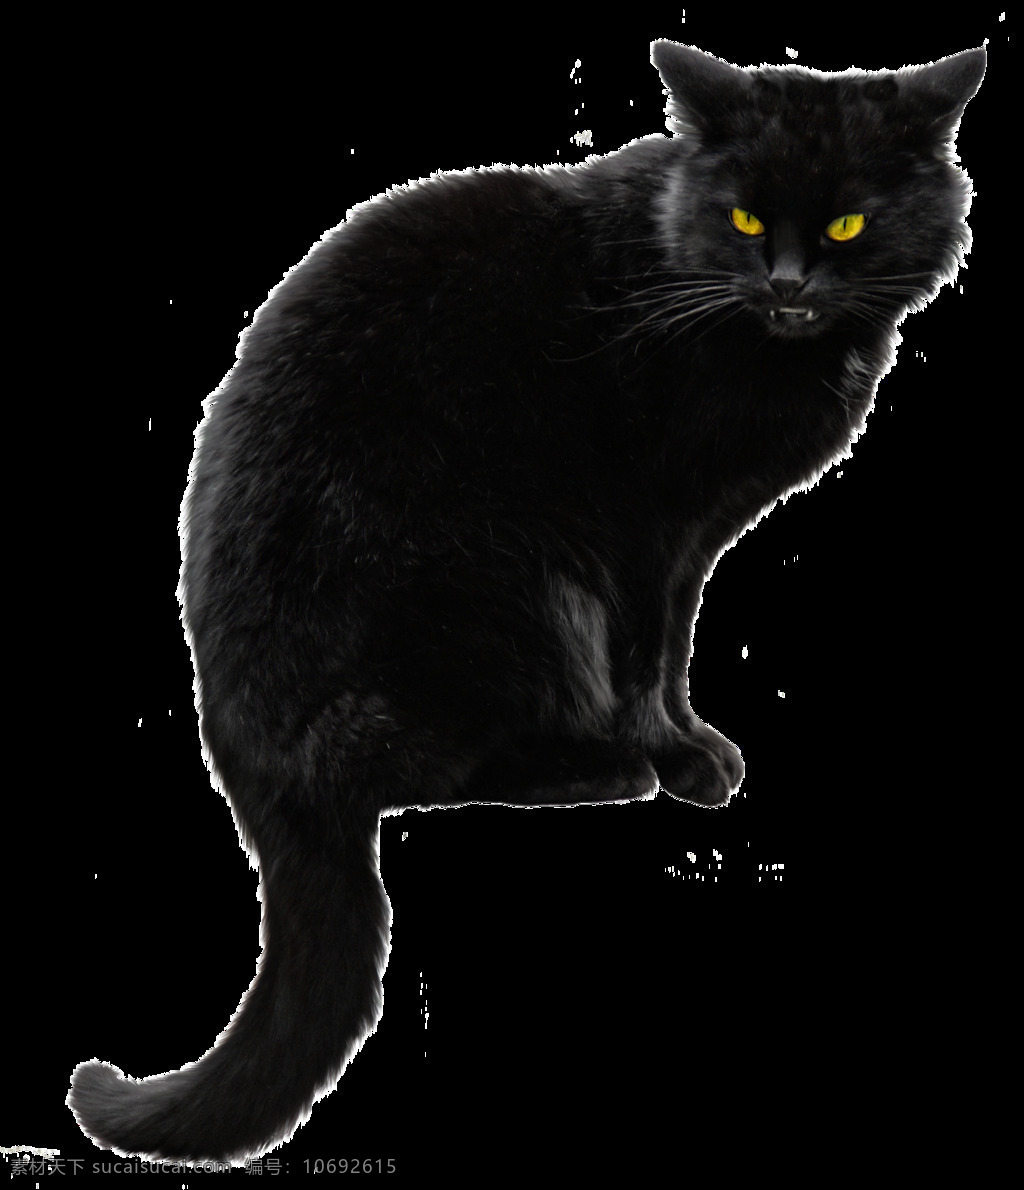 蹲 黄 眼 黑猫 免 抠 透明 可爱 可爱黄眼黑猫 小 小猫咪图片 小猫图片高清 小猫图片 猫咪素材 小猫素材